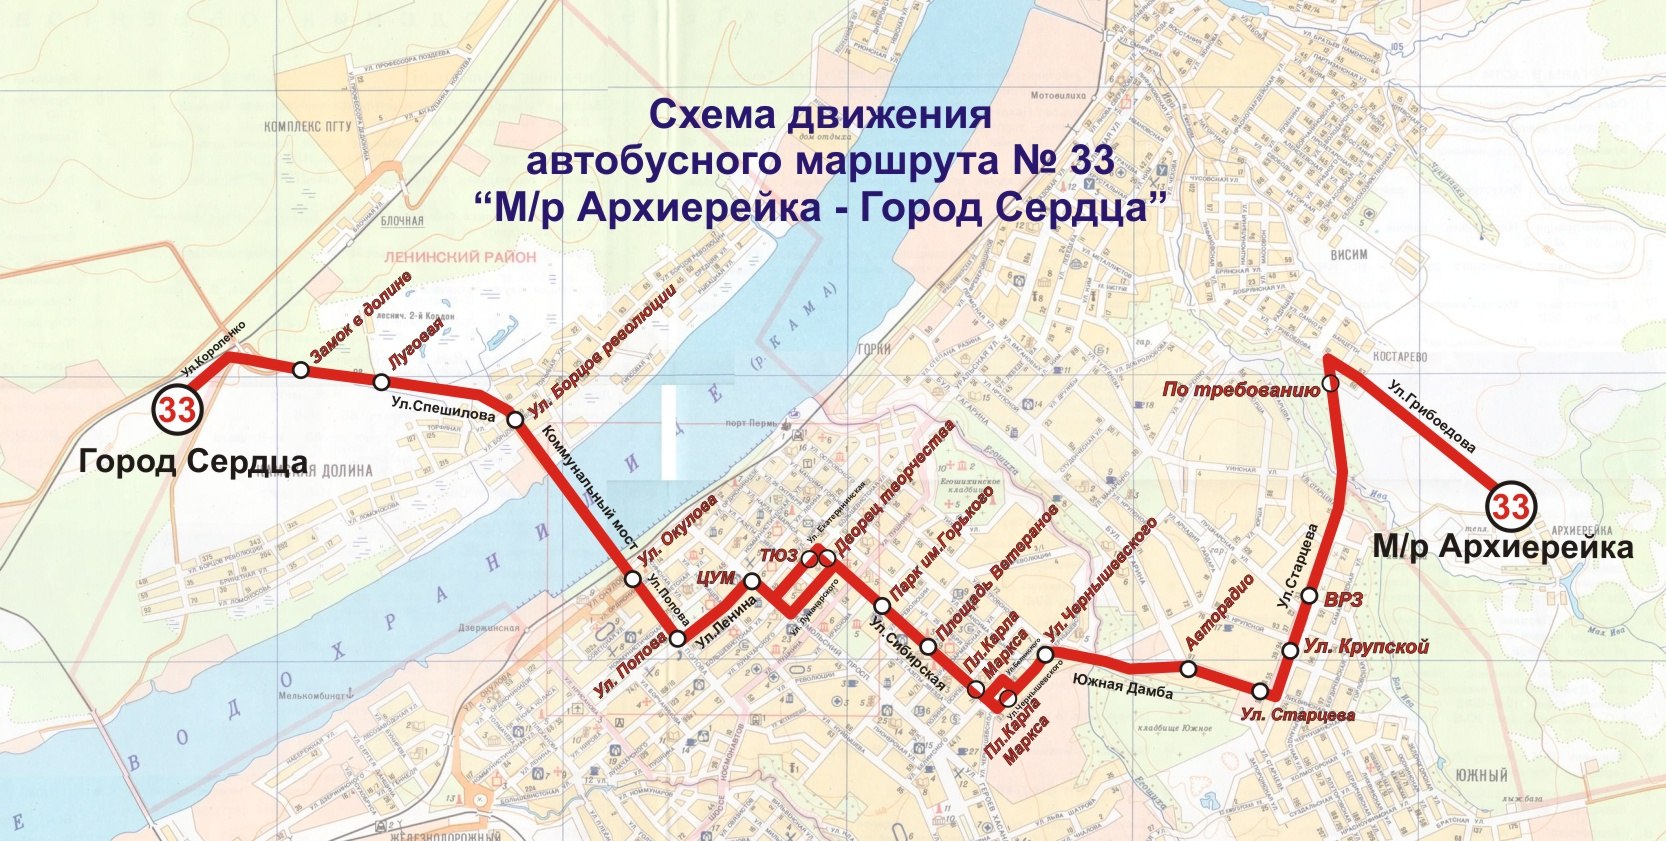 Отслеживание автобуса 77 маршрута. Маршрут 77 автобуса Пермь. Схема движения автобуса 33.